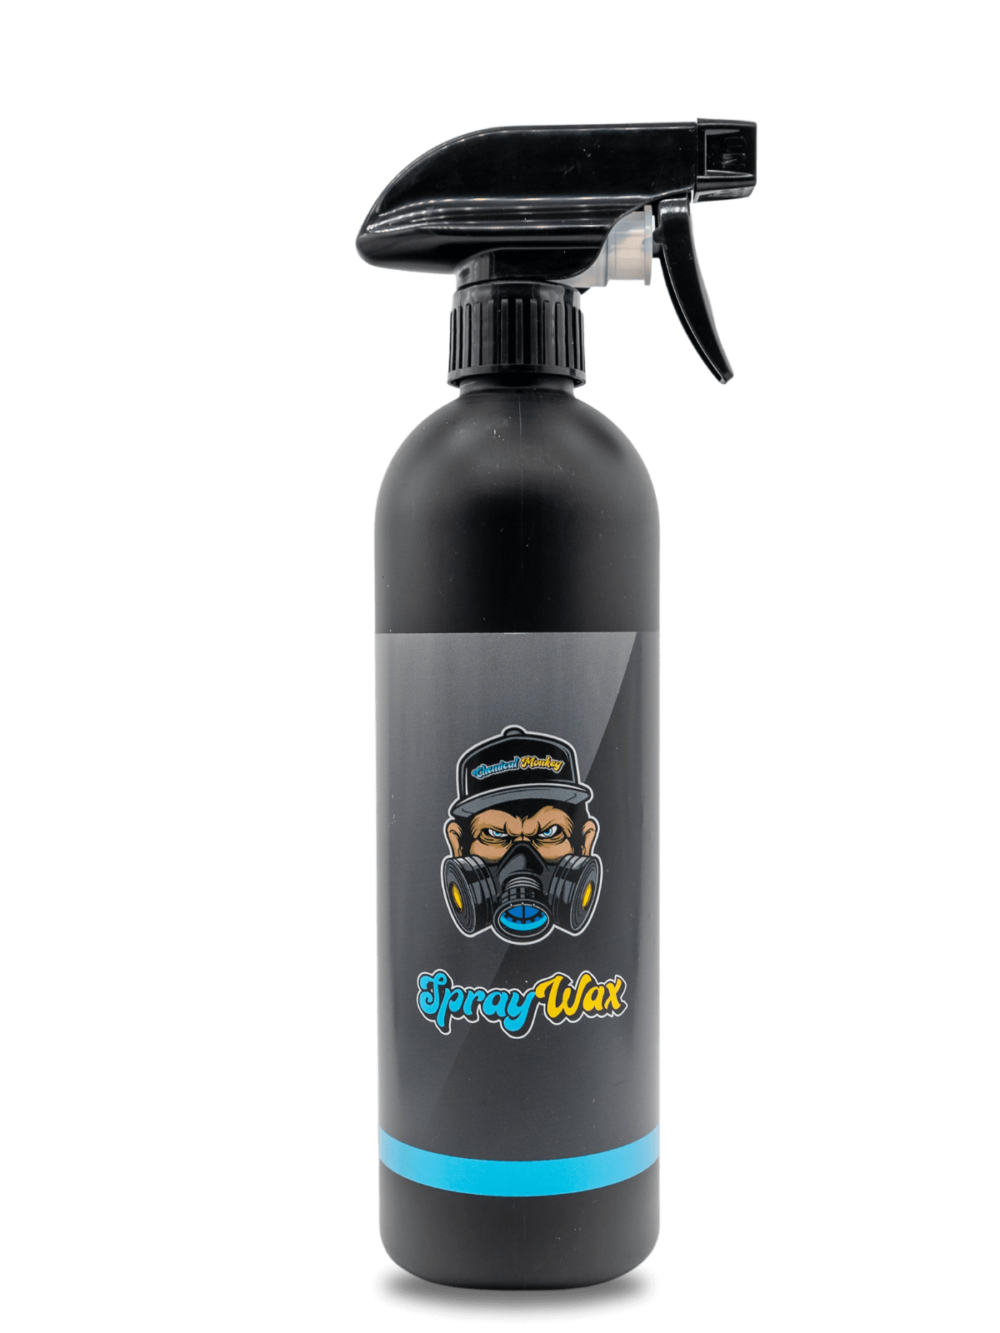 spray wax is een wax coating voor auto lak.